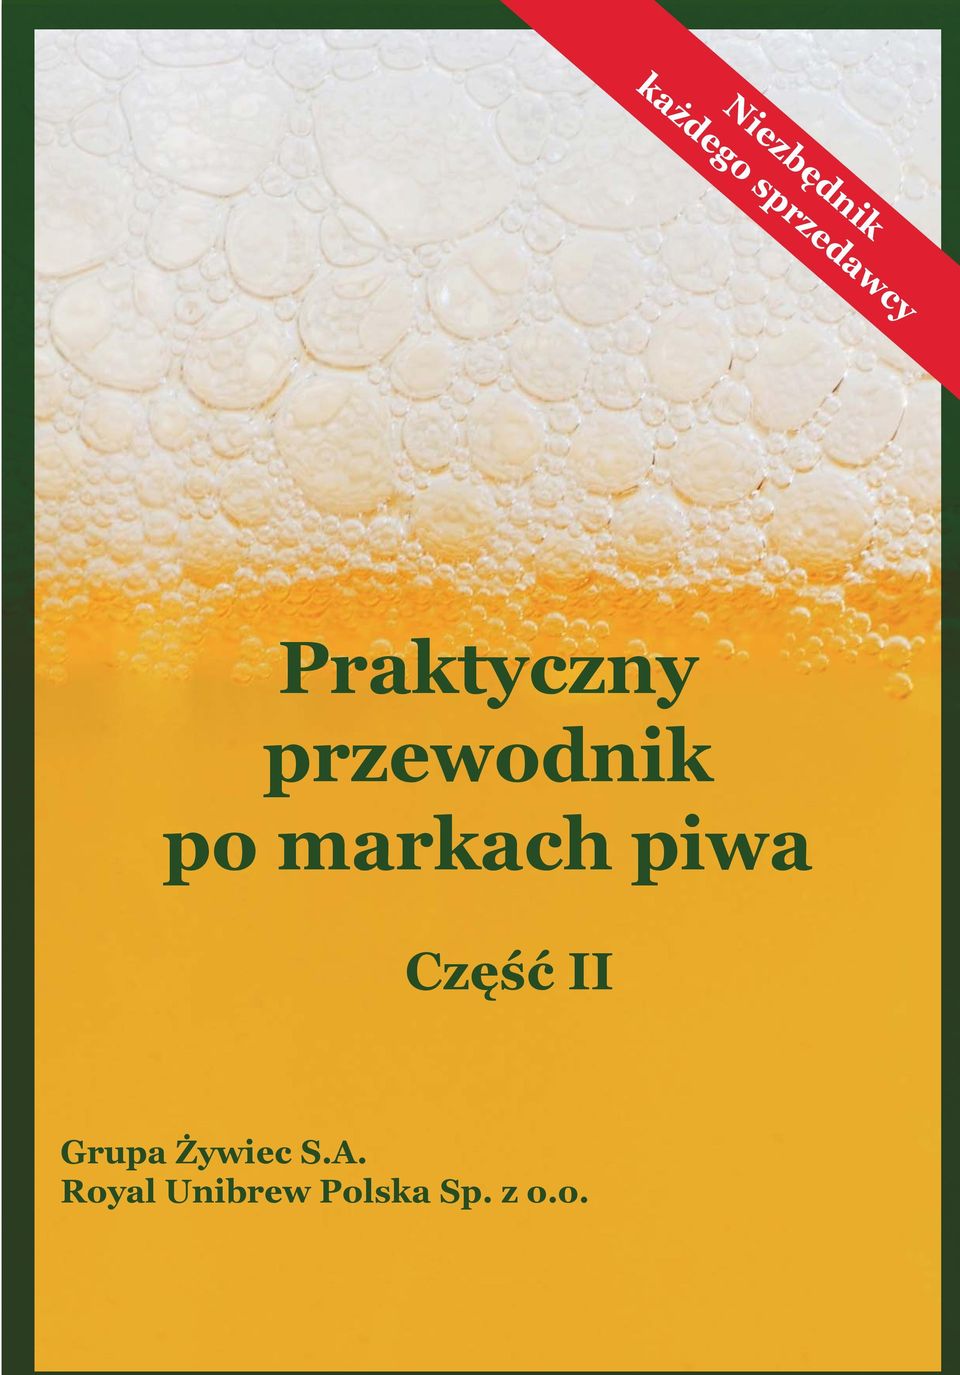 piwa Część II Grupa Żywiec S.A.